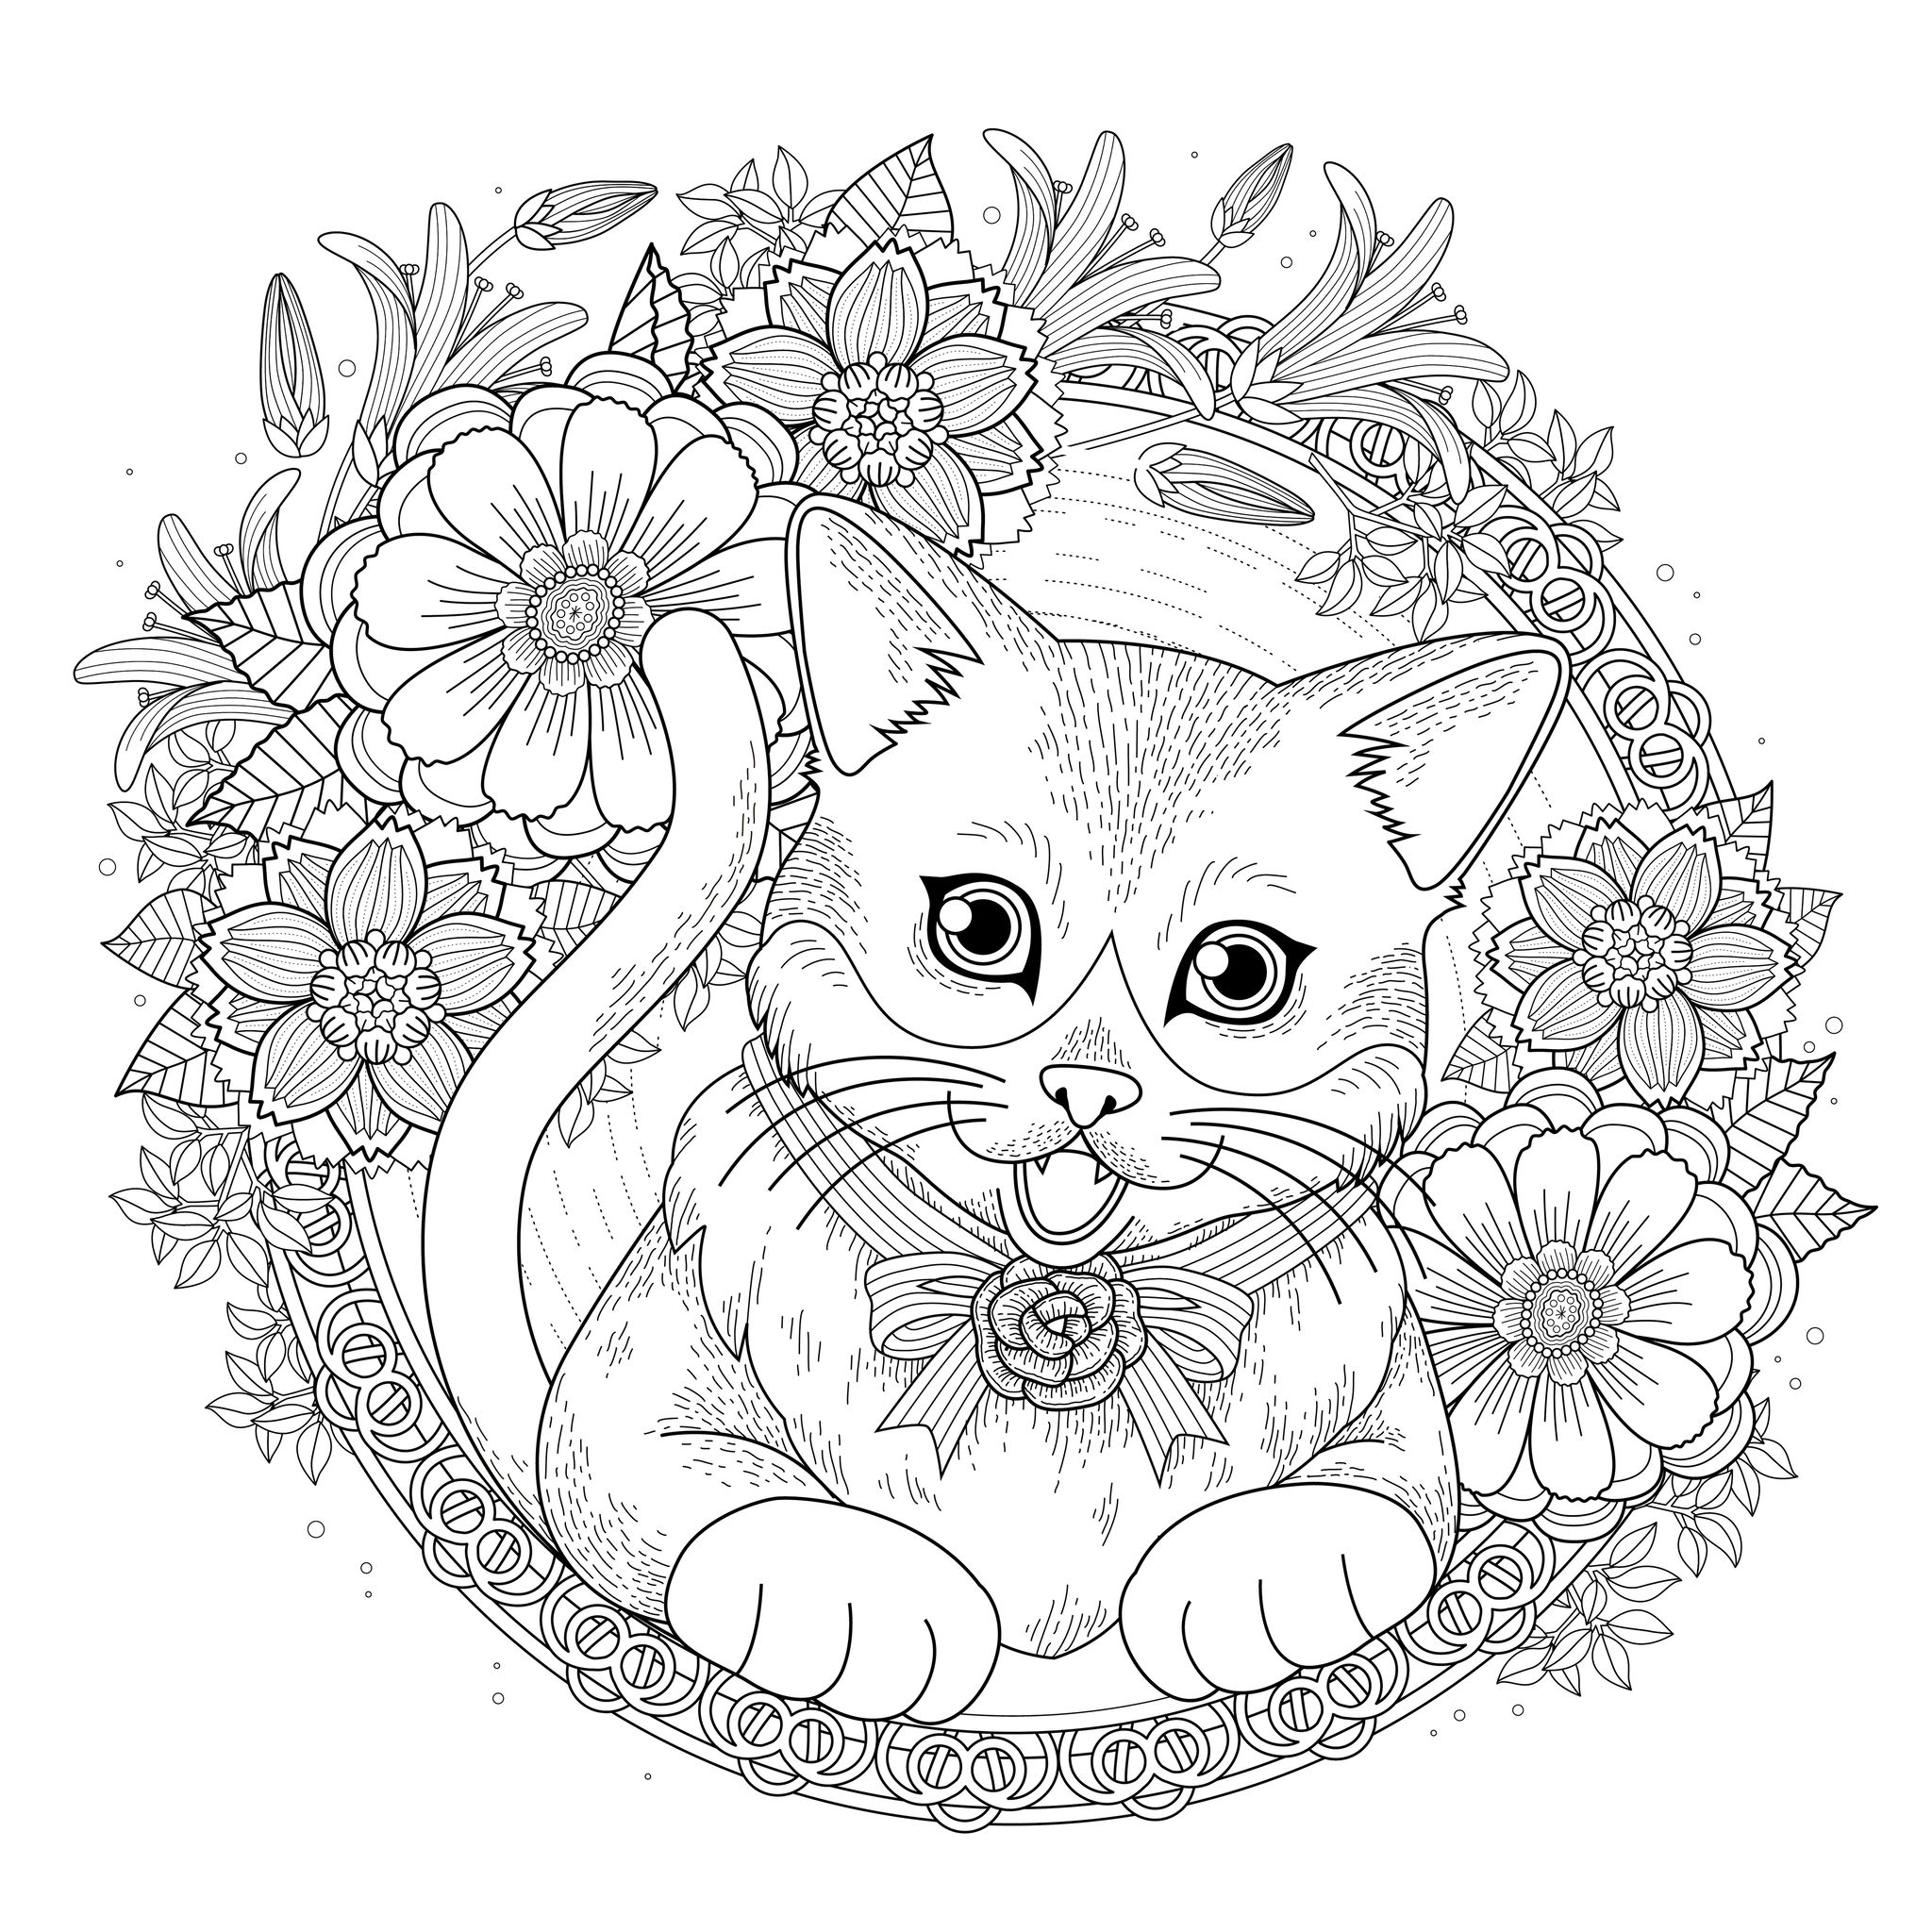 adorable página para colorear gatito con corona de flores en línea exquisita.